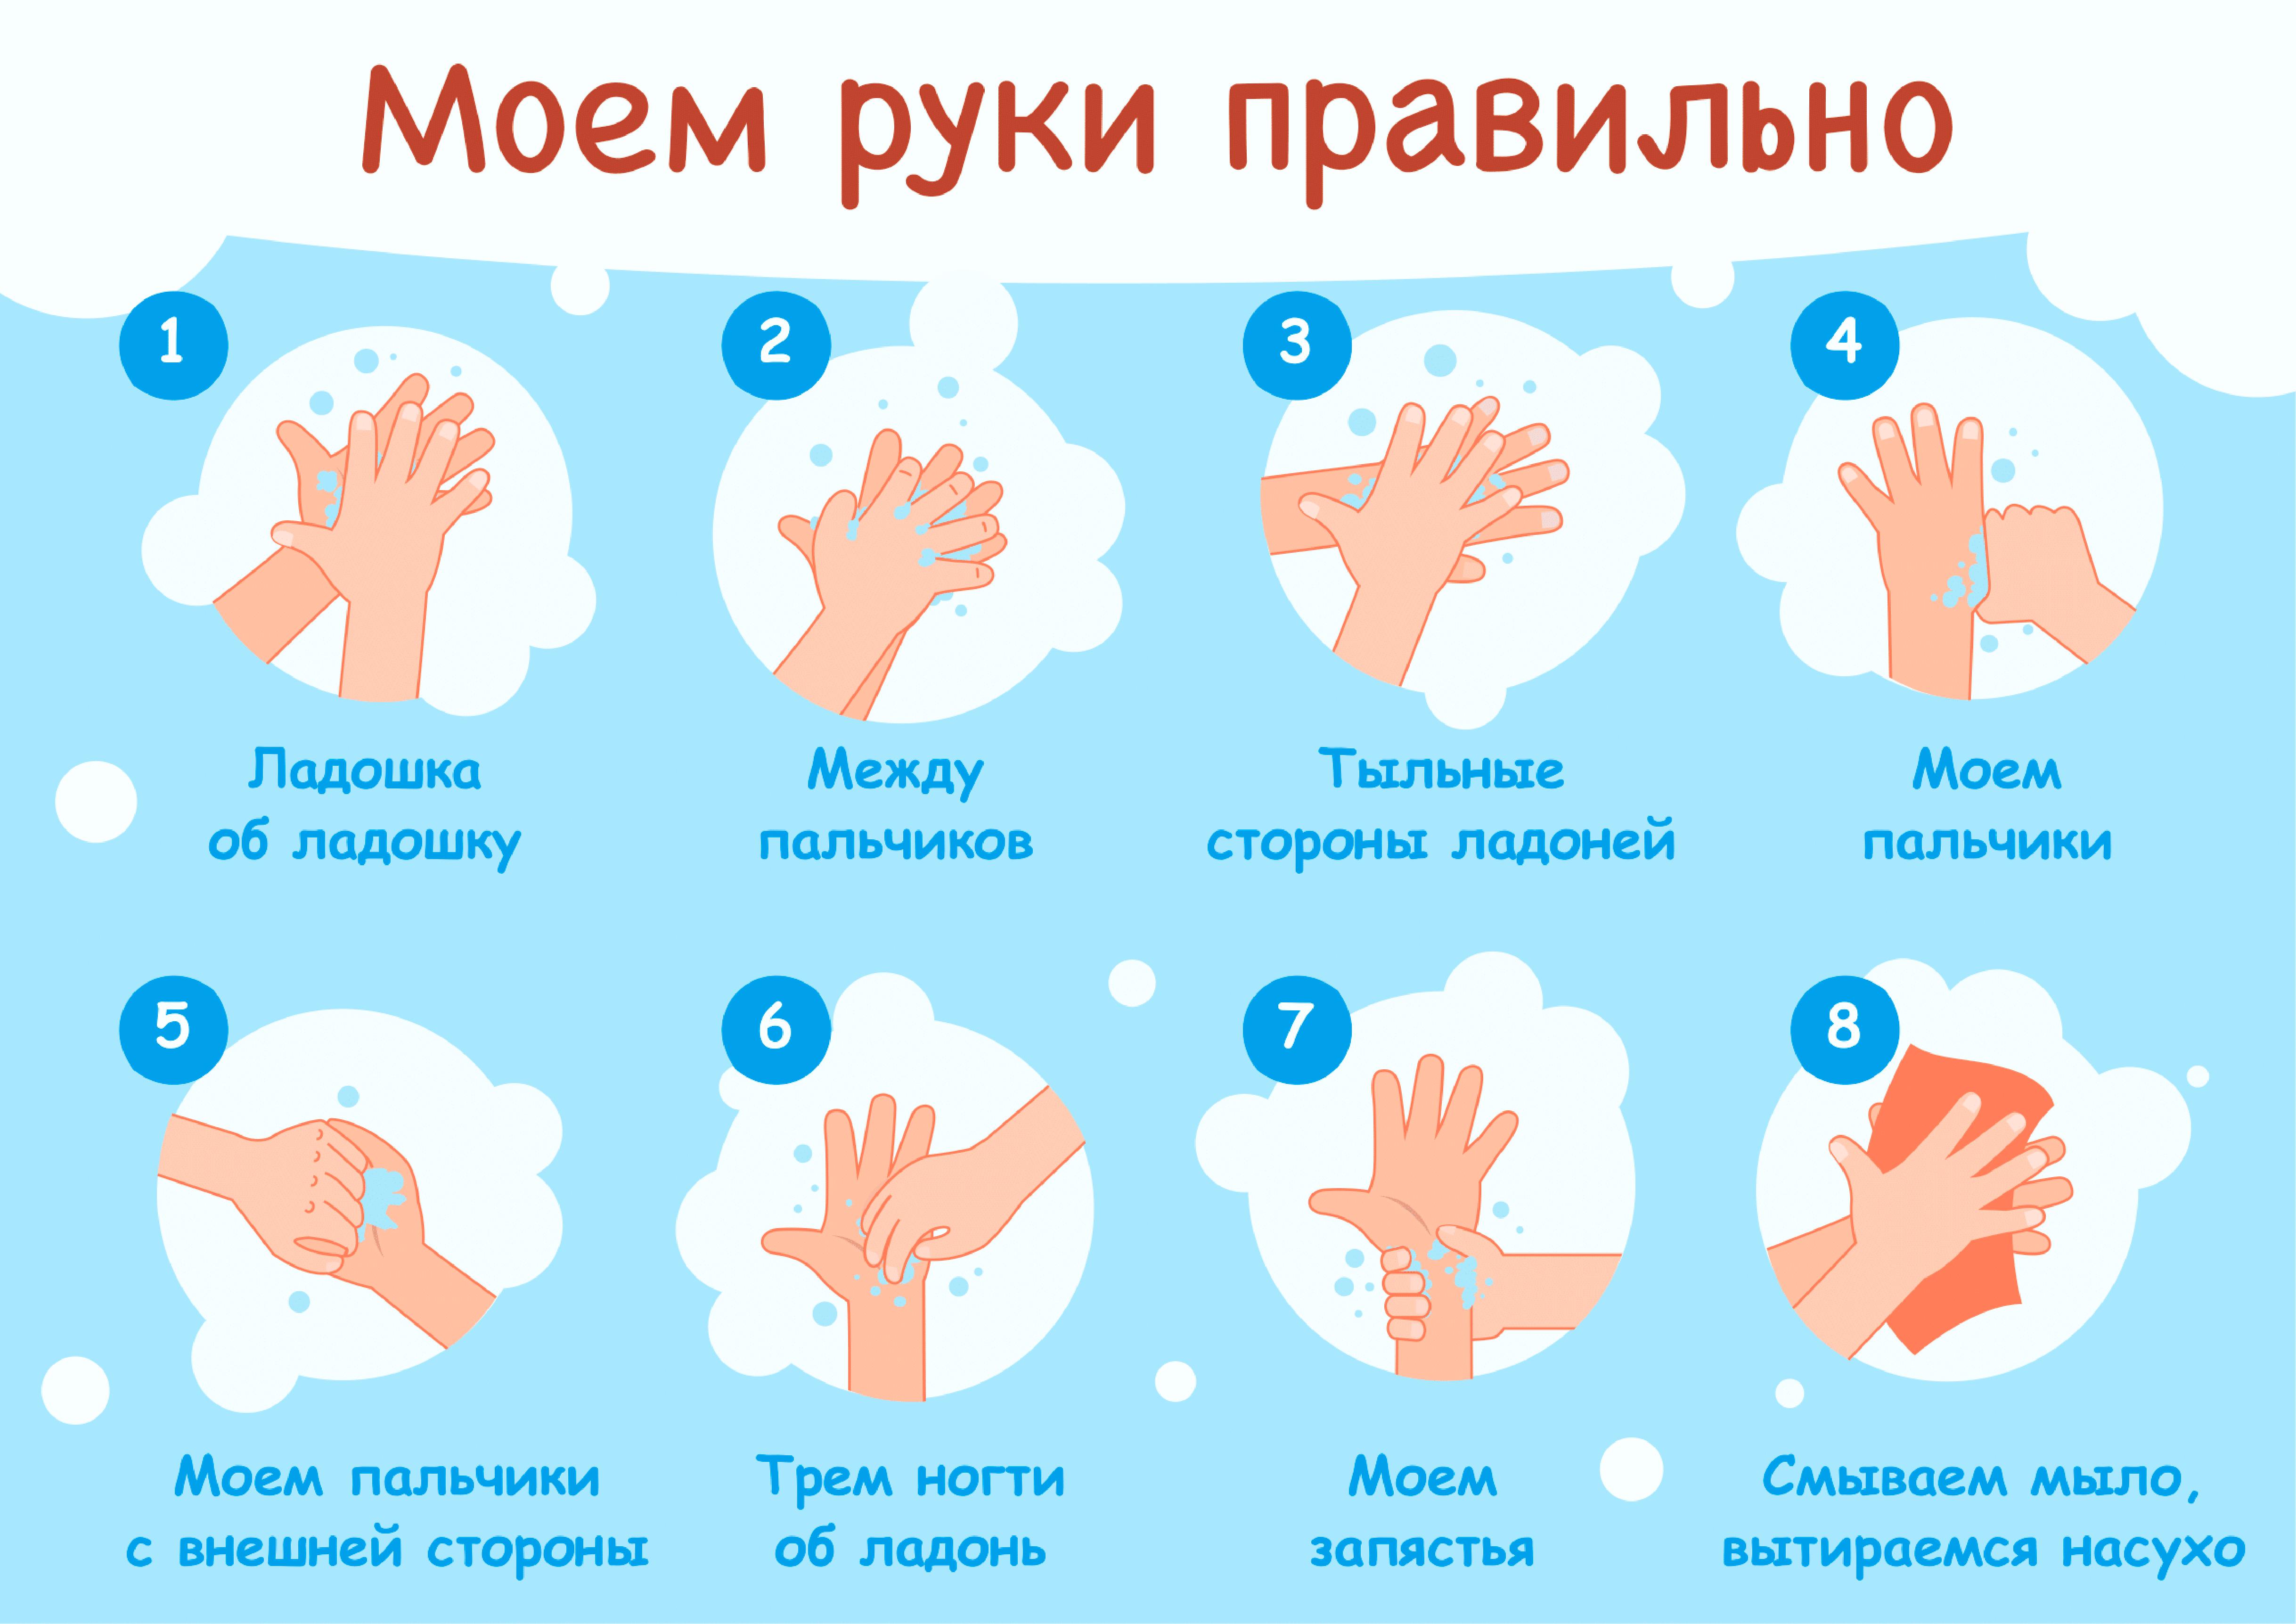 Этапы мытья рук. Мытьё рук. Алгоритм мытья рук. Как правильн Оымт ьруки. КККМ правильн омыть руки. Мытье рук дошкольников.